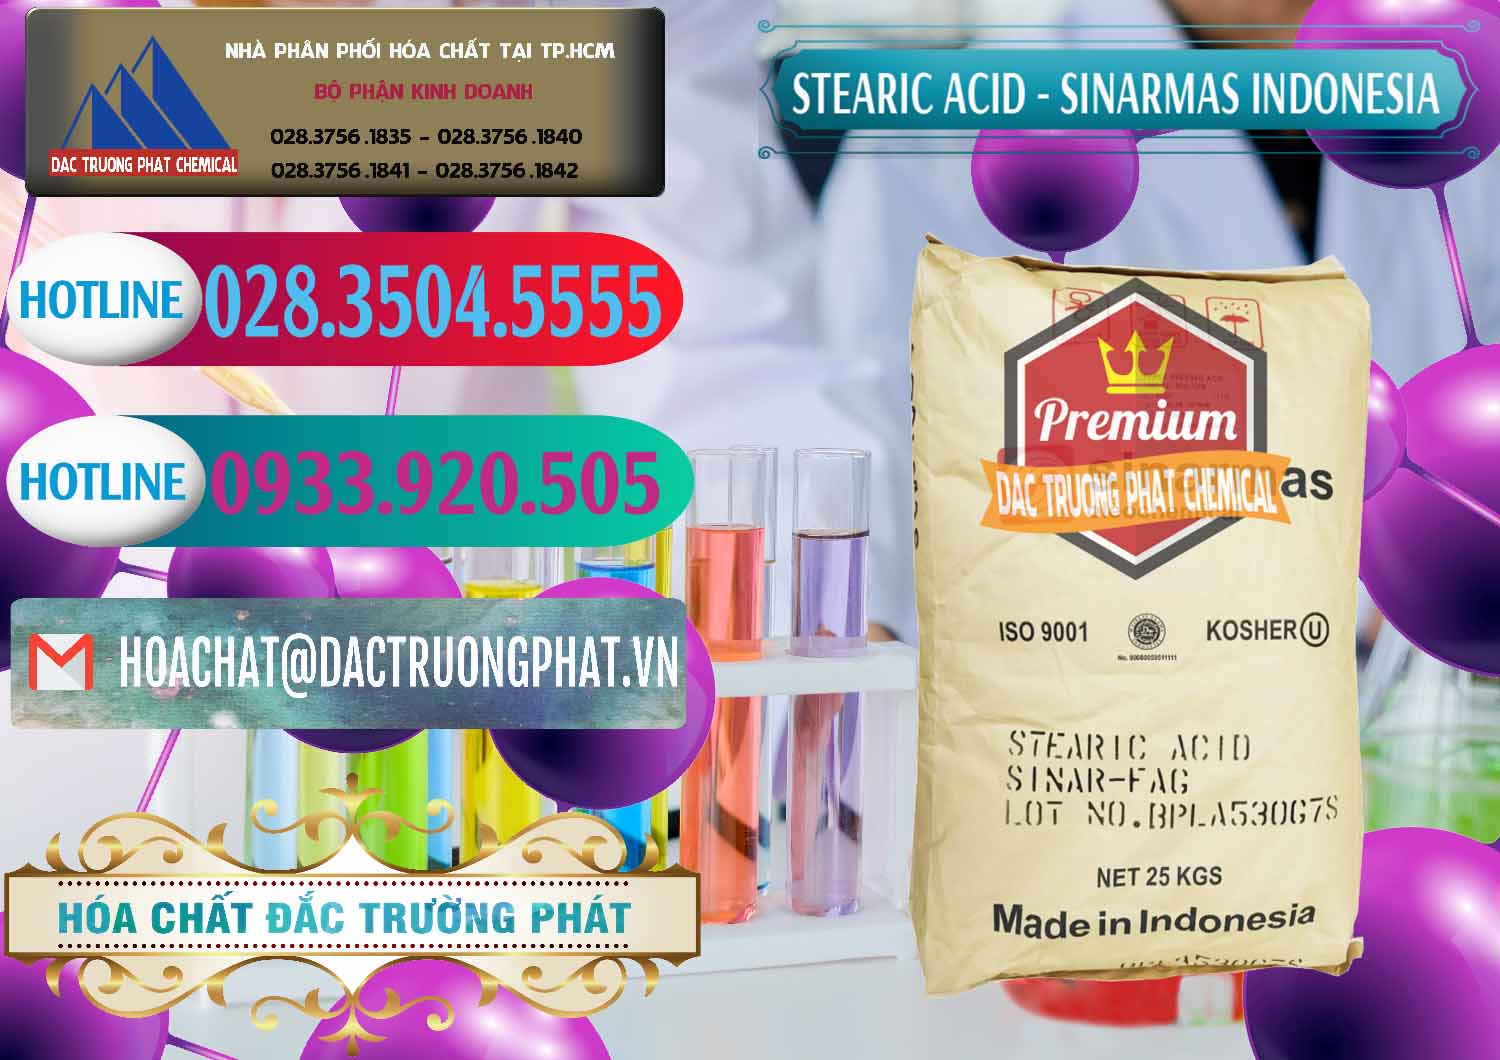 Cty bán - phân phối Axit Stearic - Stearic Acid Sinarmas Indonesia - 0389 - Cung ứng - phân phối hóa chất tại TP.HCM - truongphat.vn